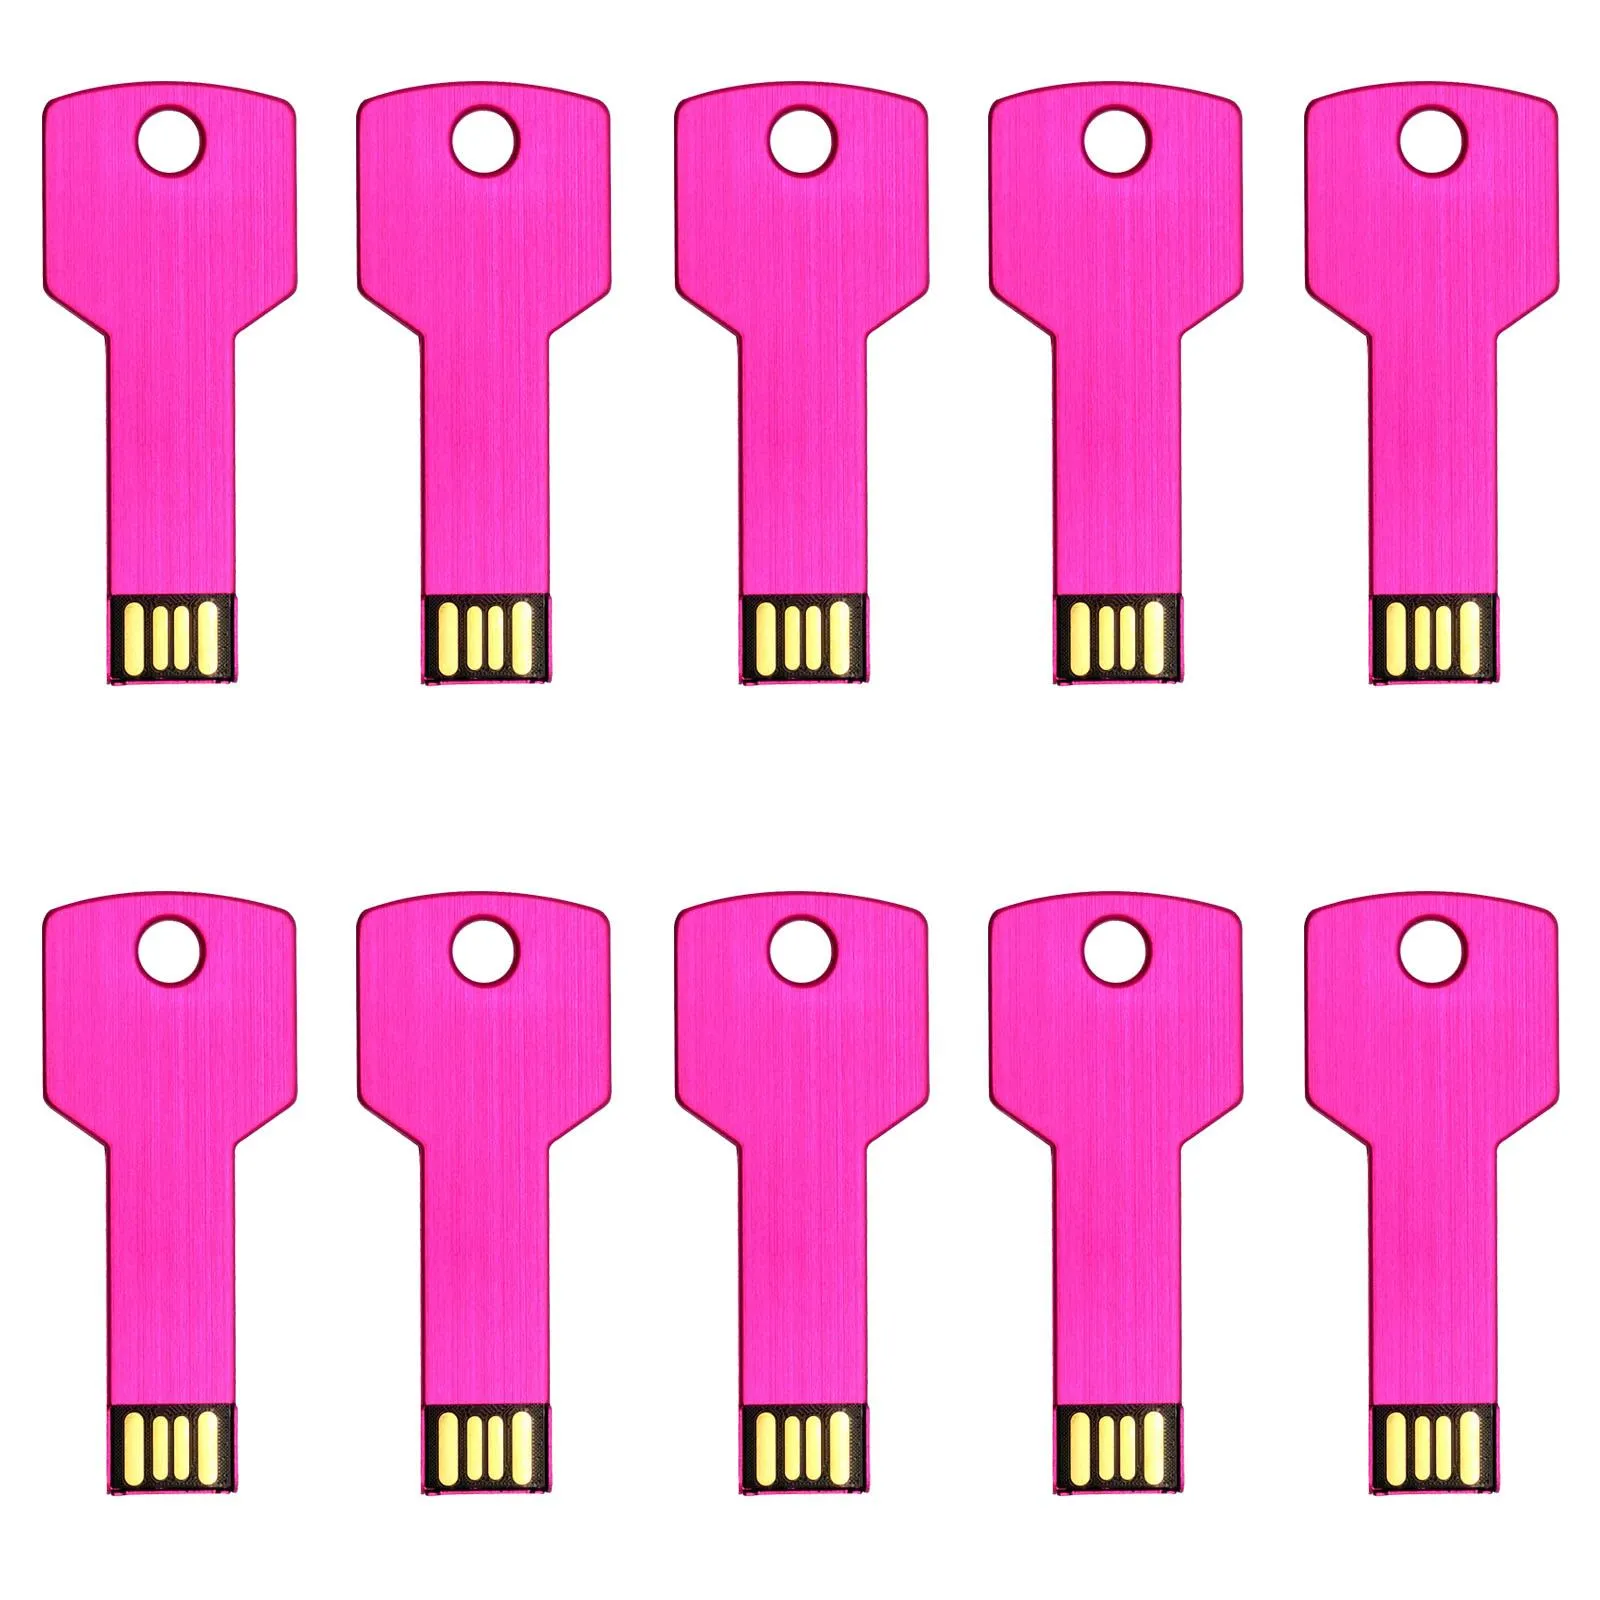 O Envio gratuito de 10 Pçs / lote USB Flash Drives 8 GB de Metal Design Chave Shaped USB Memory Sticks para Armazenamento de Dados de Computador